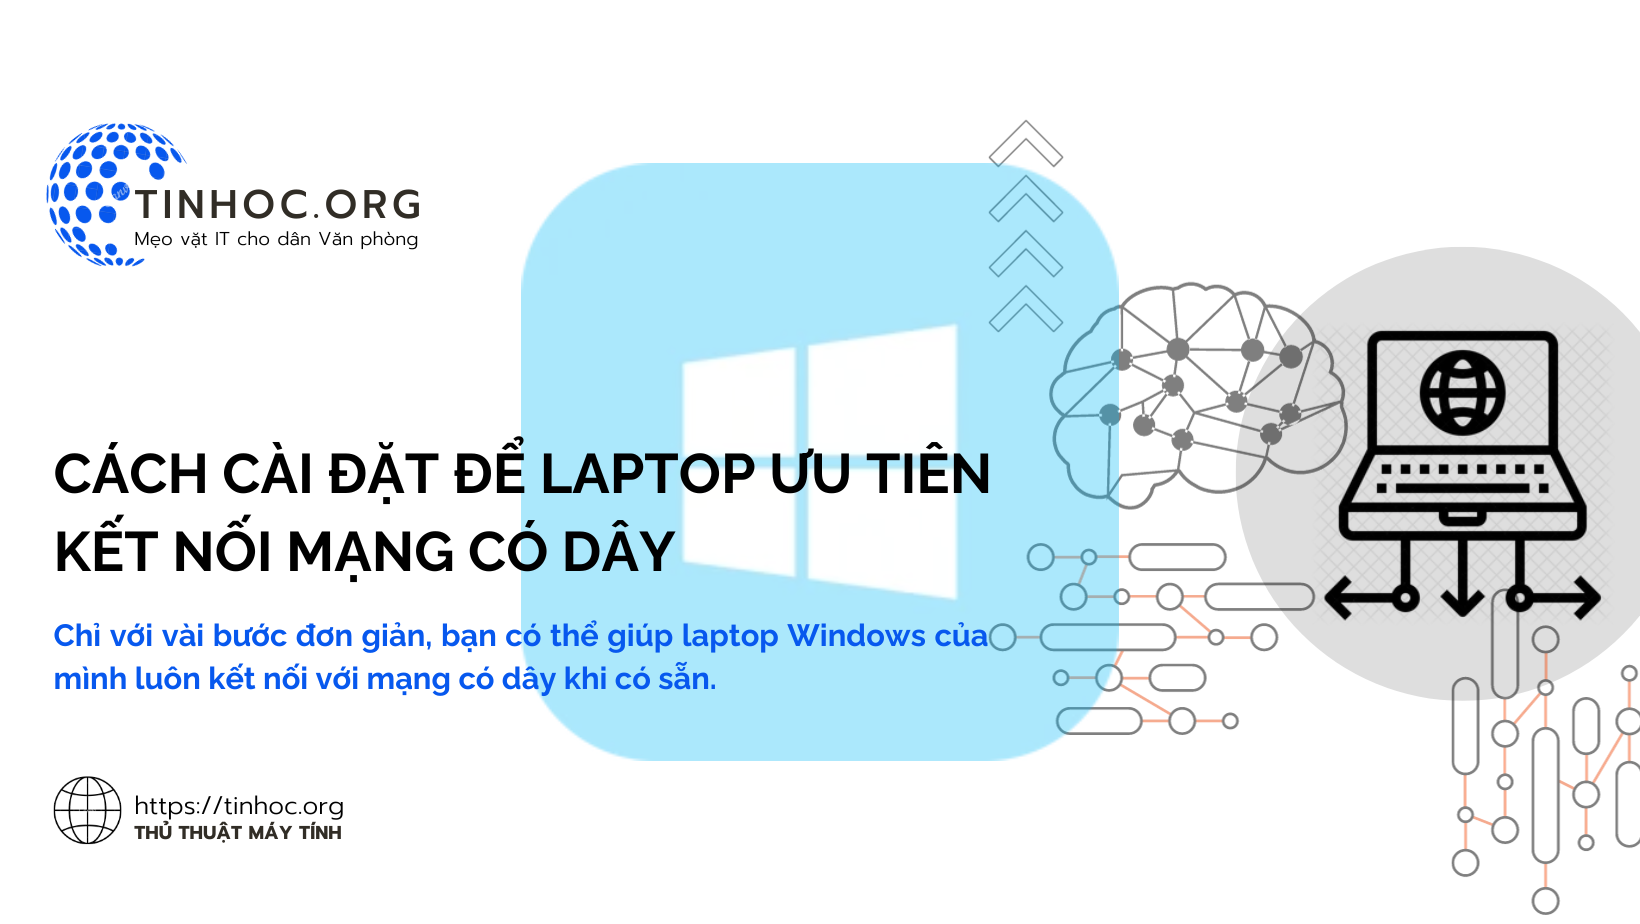 Chỉ với vài bước đơn giản, bạn có thể giúp laptop Windows của mình luôn kết nối với mạng có dây khi có sẵn.